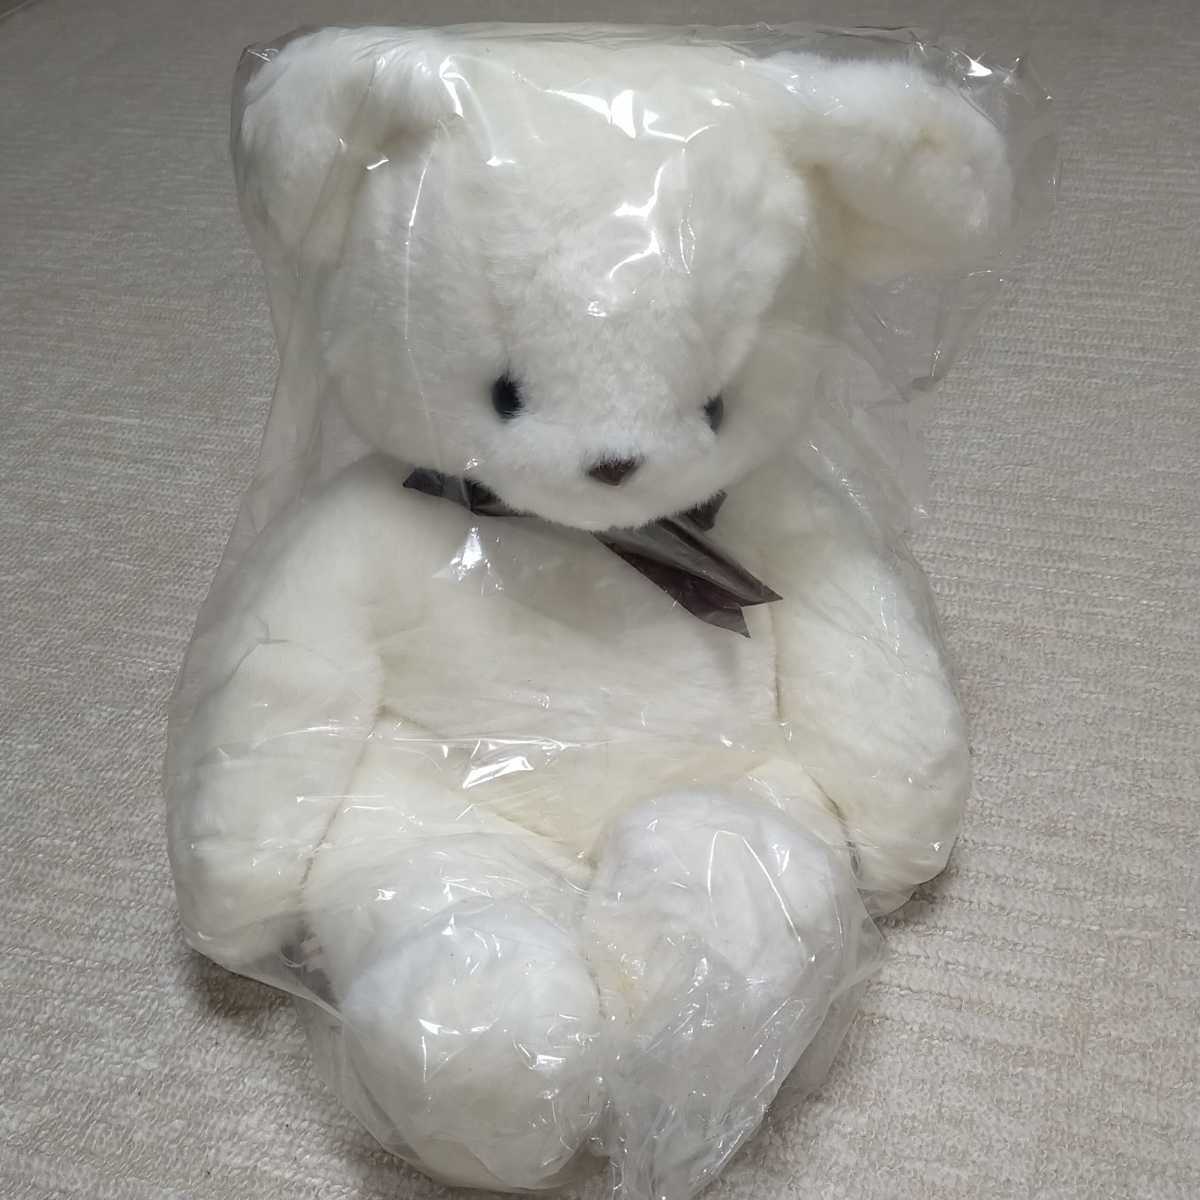  редкость не продается новый товар * Showa Hitachi салон кондиционер оригинал мягкая игрушка белый .. kun . прекрасный фирма ei Coca iya Novelty медведь retro подлинная вещь *223